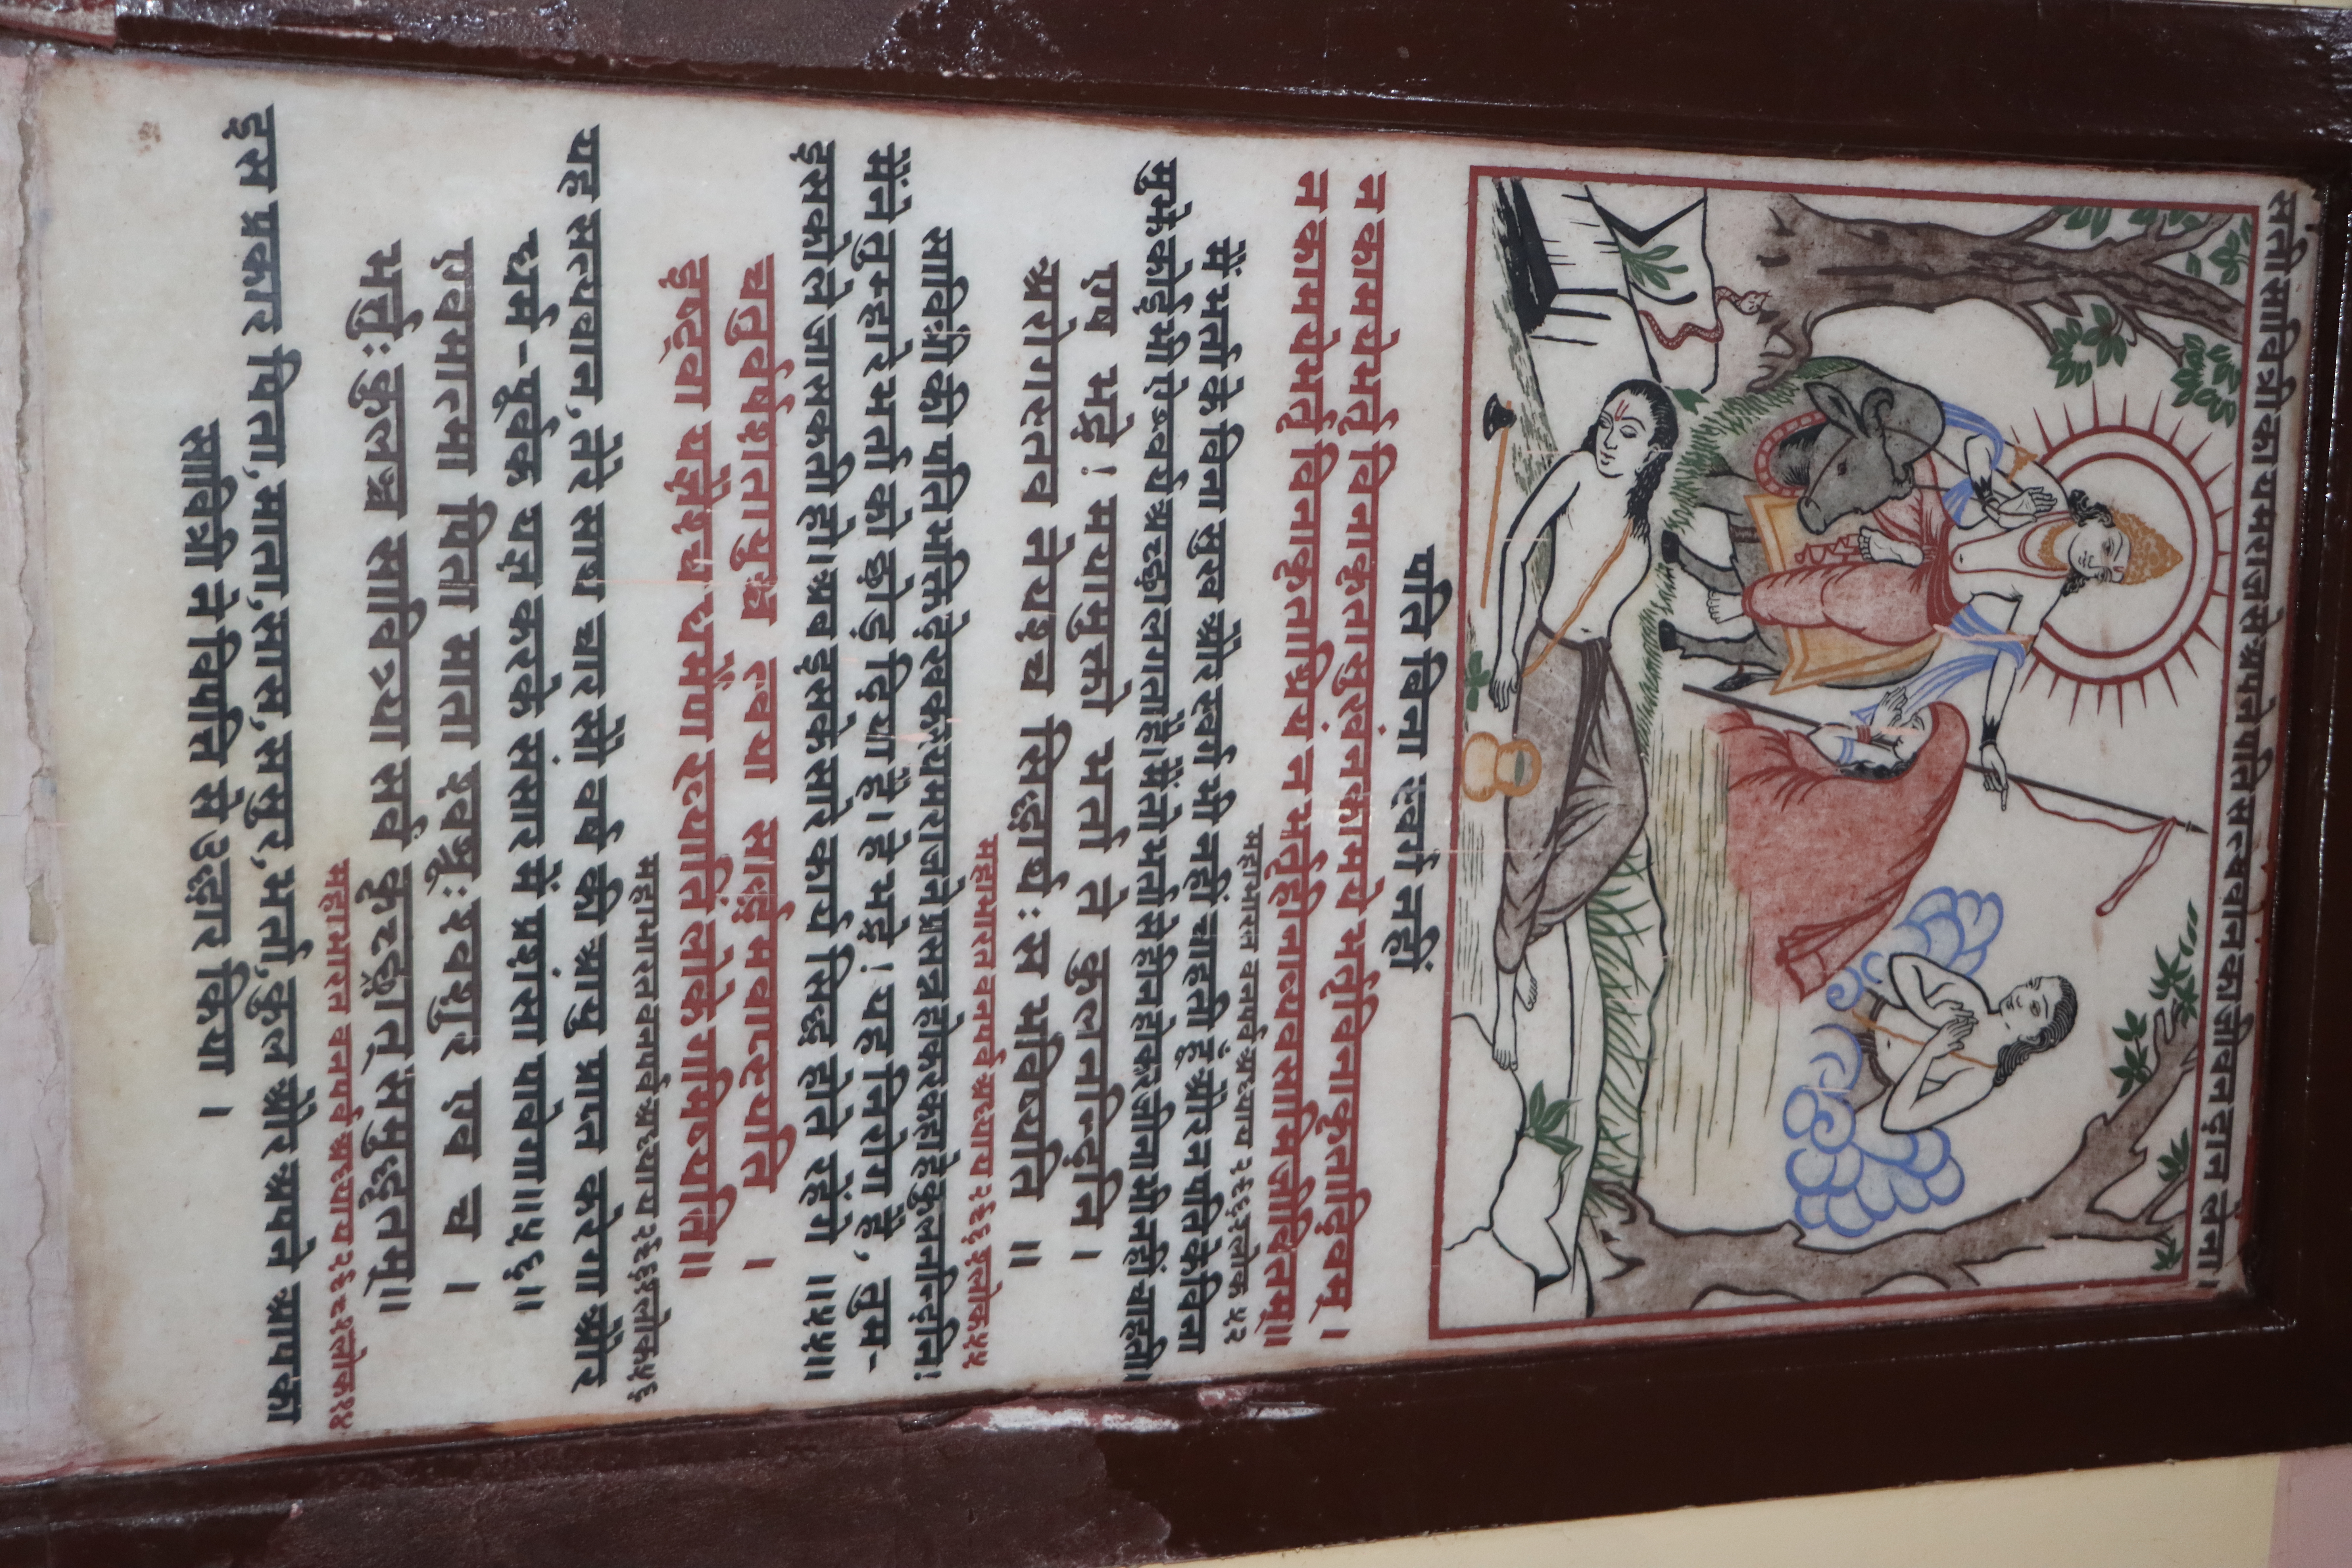 Shankaracharya-visit-Benares-Hindu-University